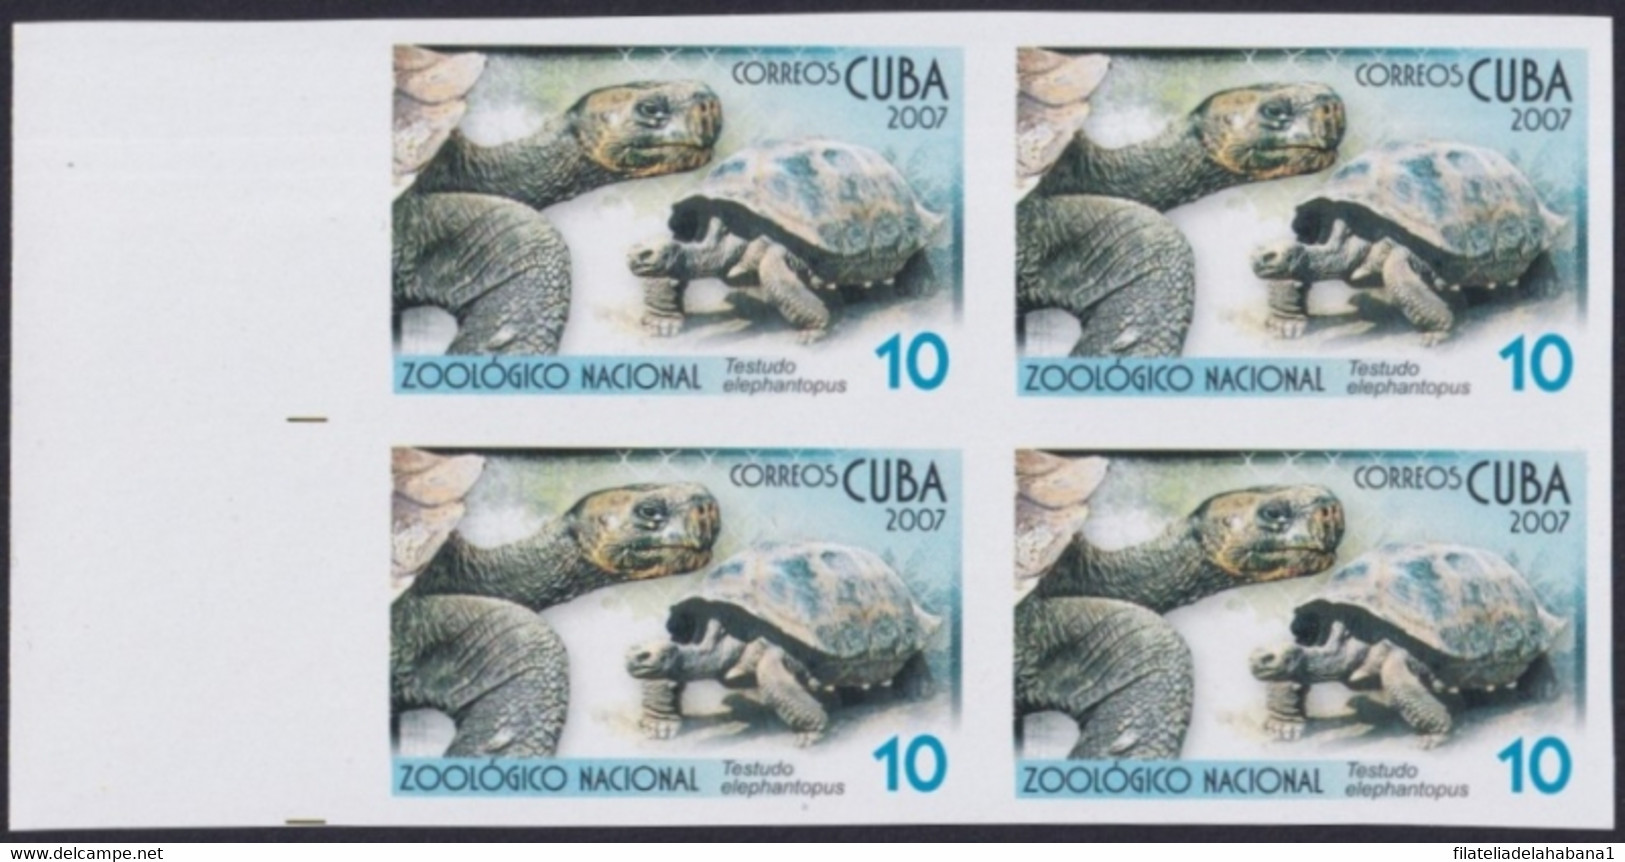 2007.710 CUBA 2007 2.05$ MNH IMPERFORATED PROOF VIRGEN KEY FAUNA ZOO TURTLE TORTUGA. - Geschnittene, Druckproben Und Abarten